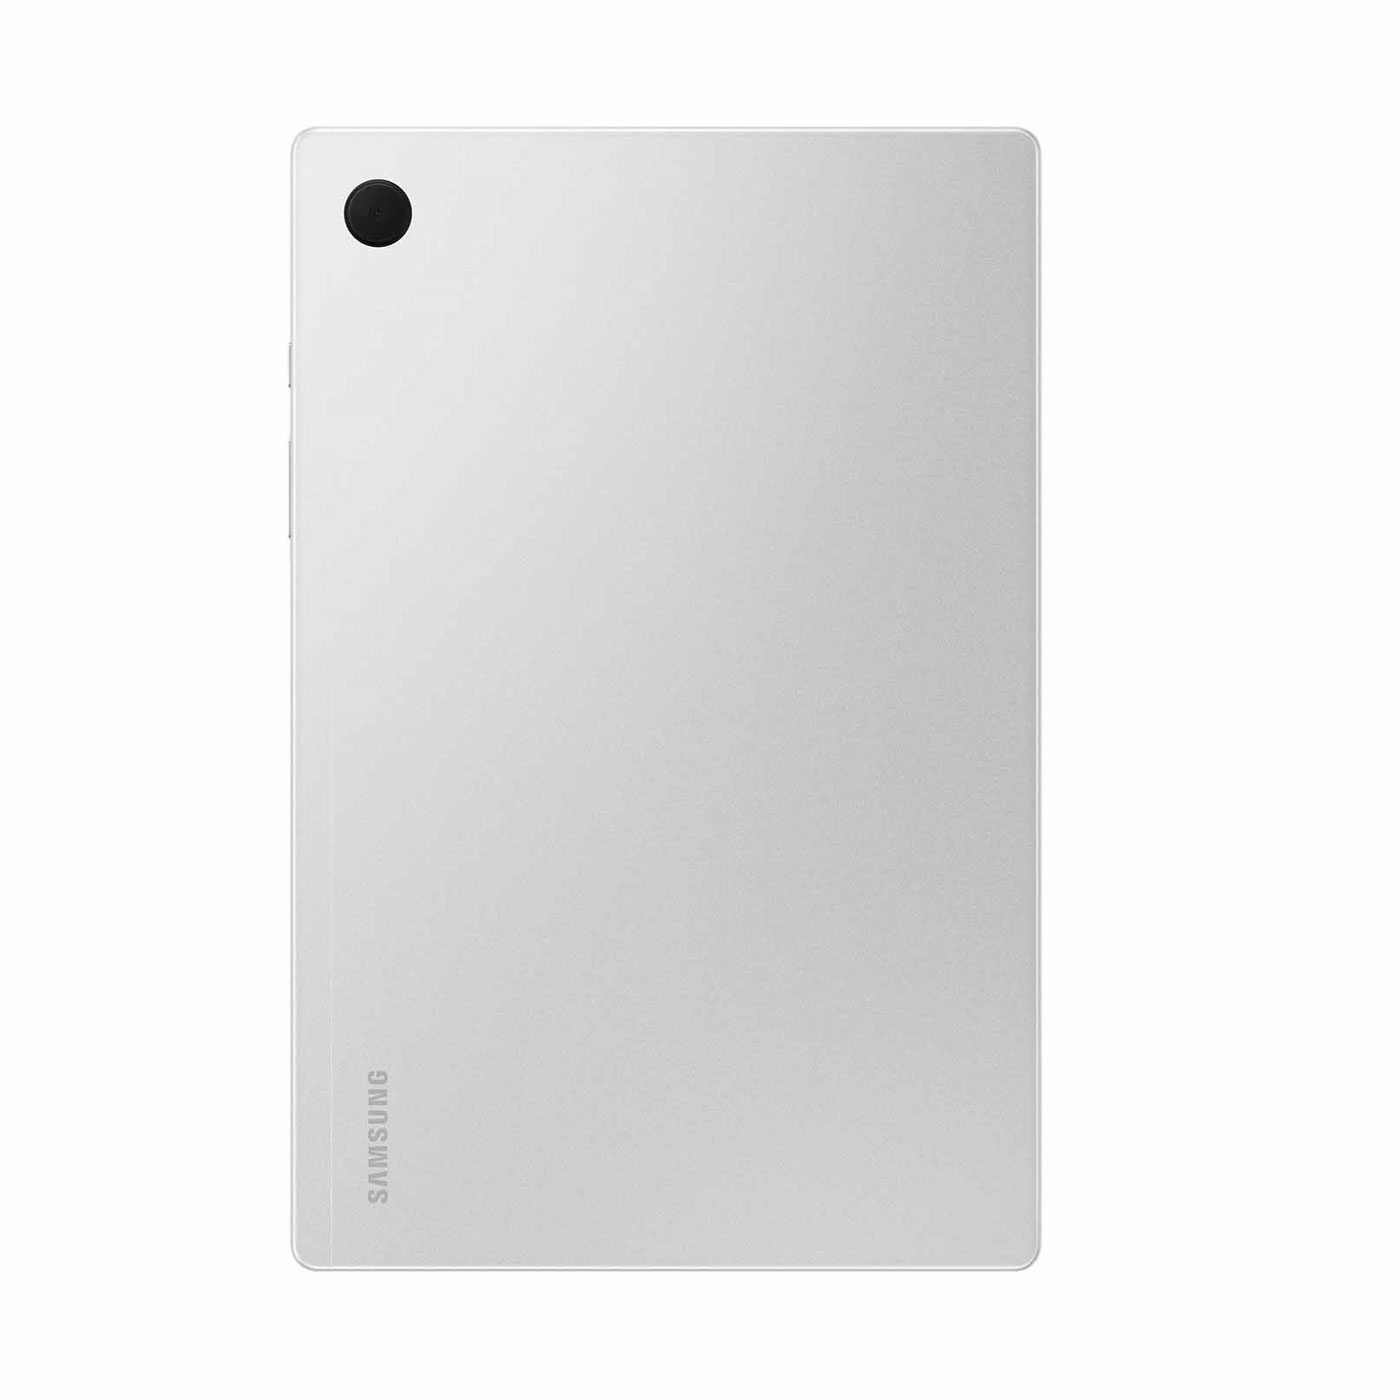 Tablet SAMSUNG 10.5" Pulgadas A8 64GB wifi color Plateado